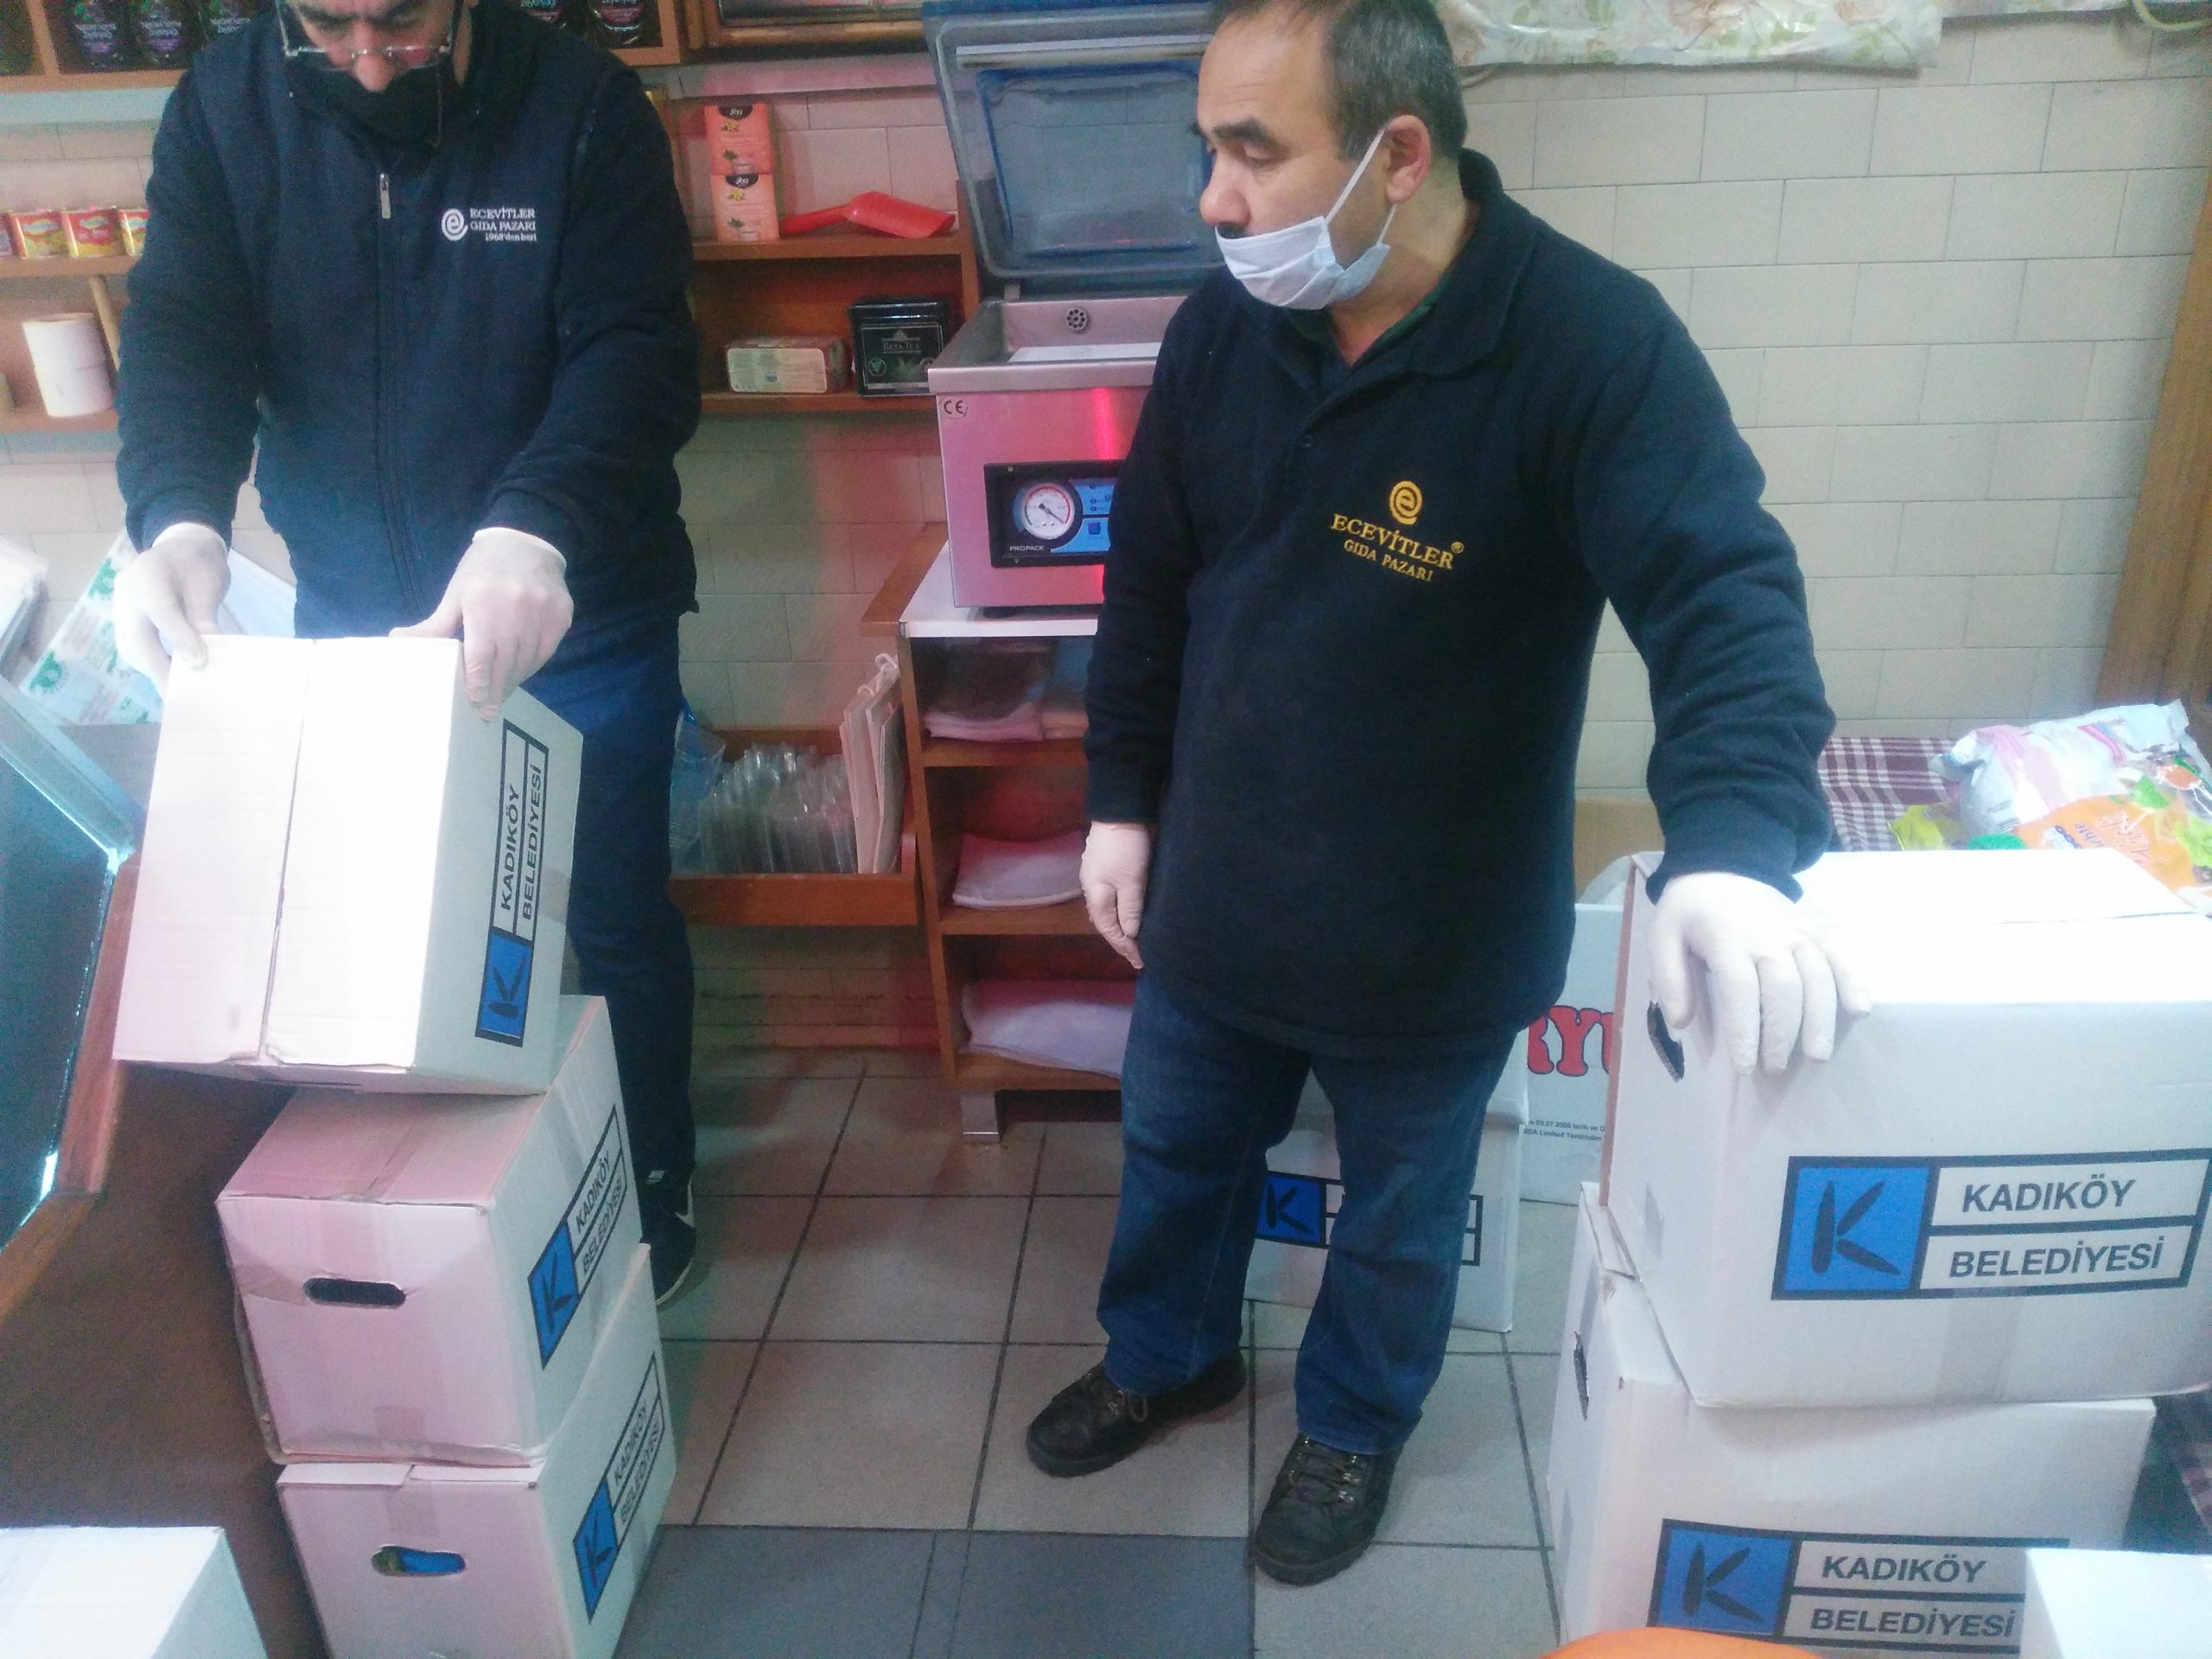 Kadıköy Belediyesi’nden, Kadıköy Tarihi Çarşı çalışanlarına erzak yardımı yapıldı